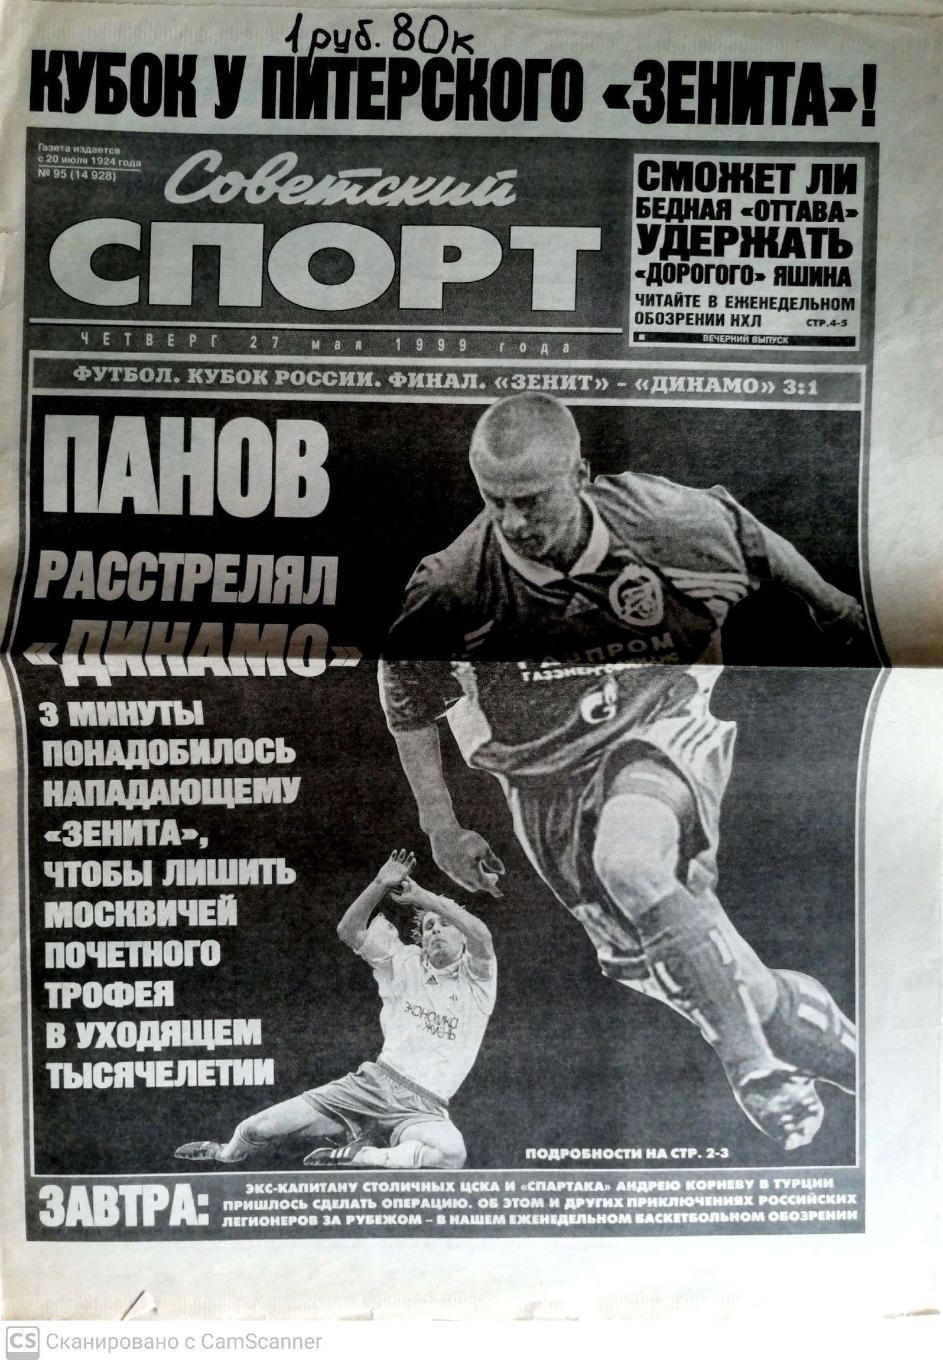 Советский спорт (Москва). 27.05.1999 г. Зенит взял Кубок России